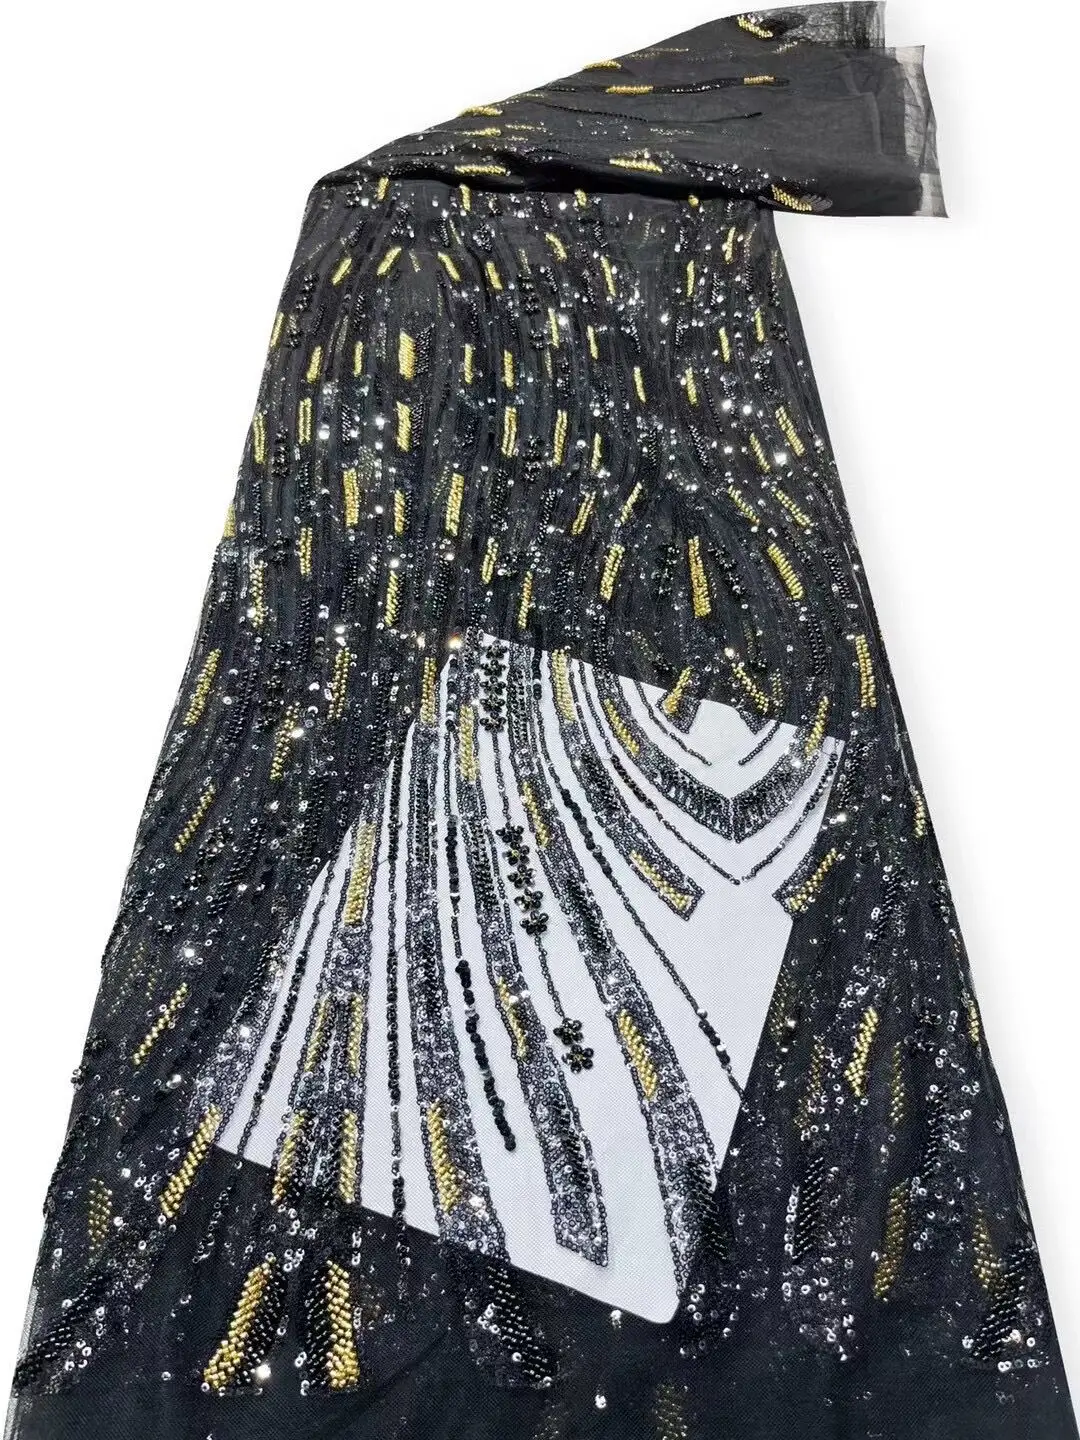  тюль кружевная ткань высокое качество африканская вышивка французский j-1302412 пайетки свадебное платье из бисера